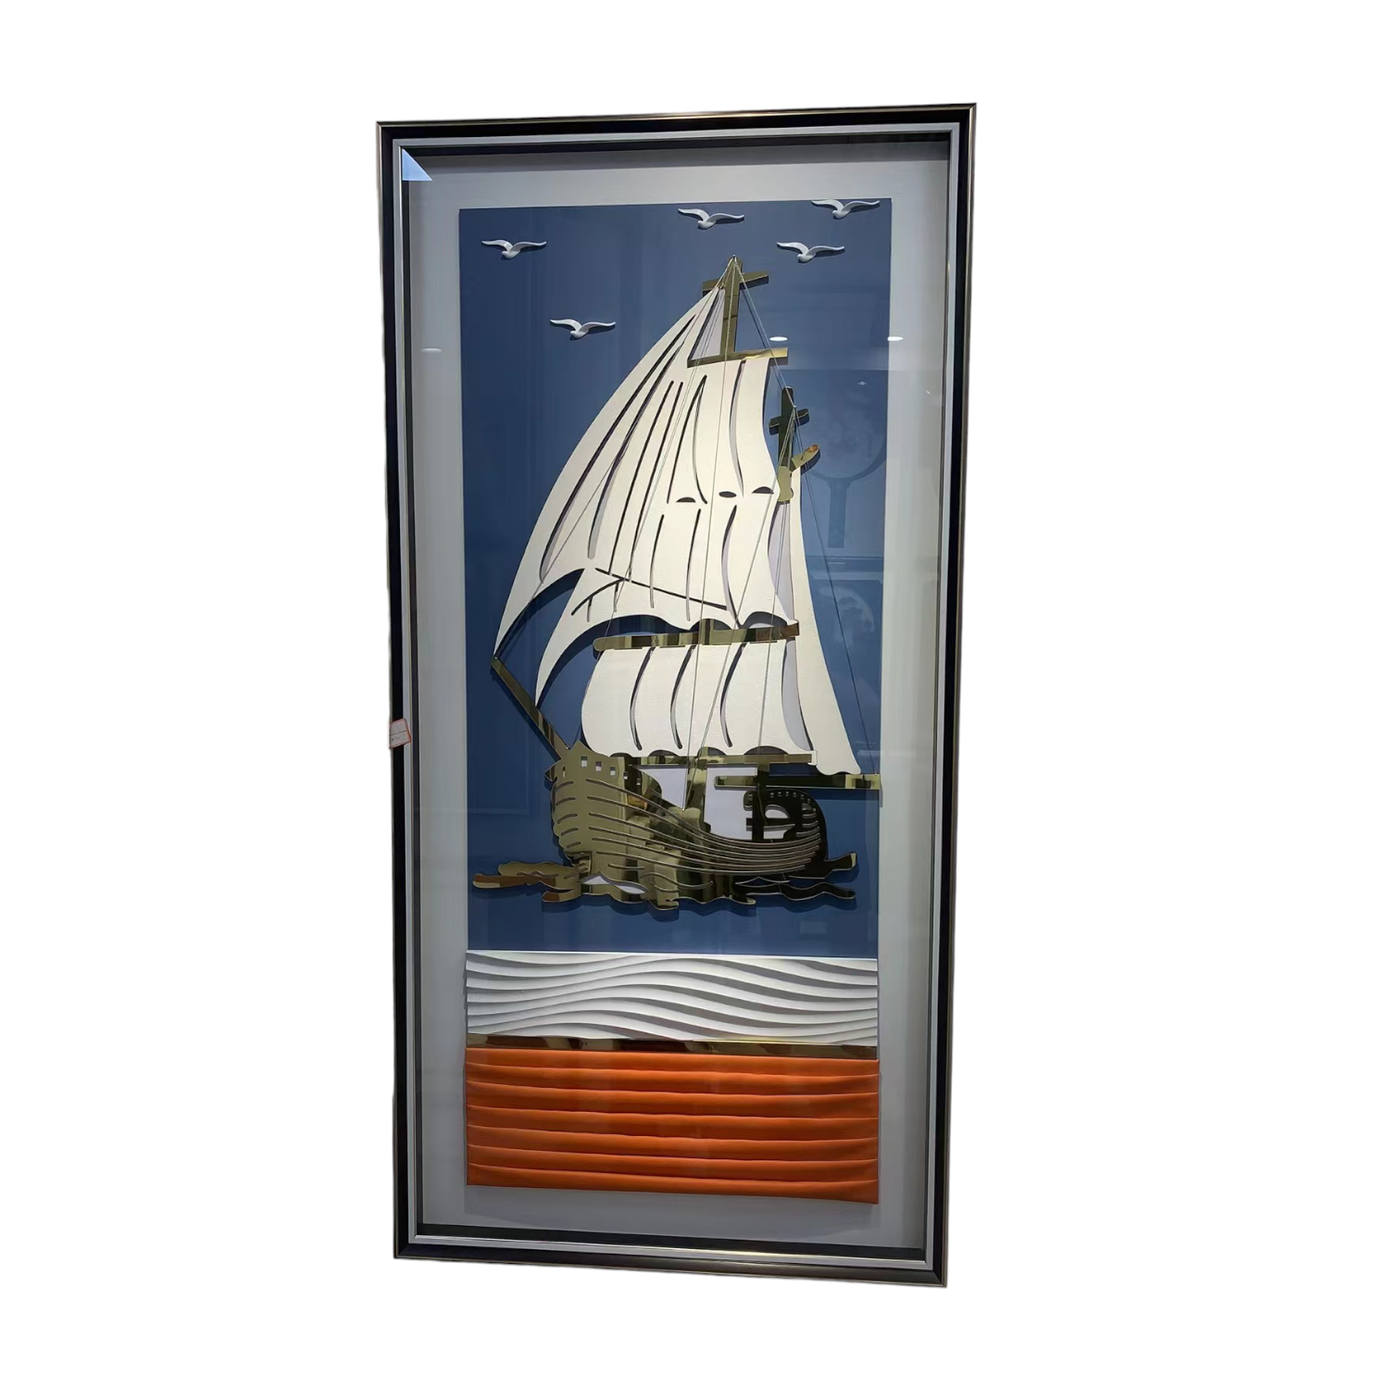 Sailing Ship wall art